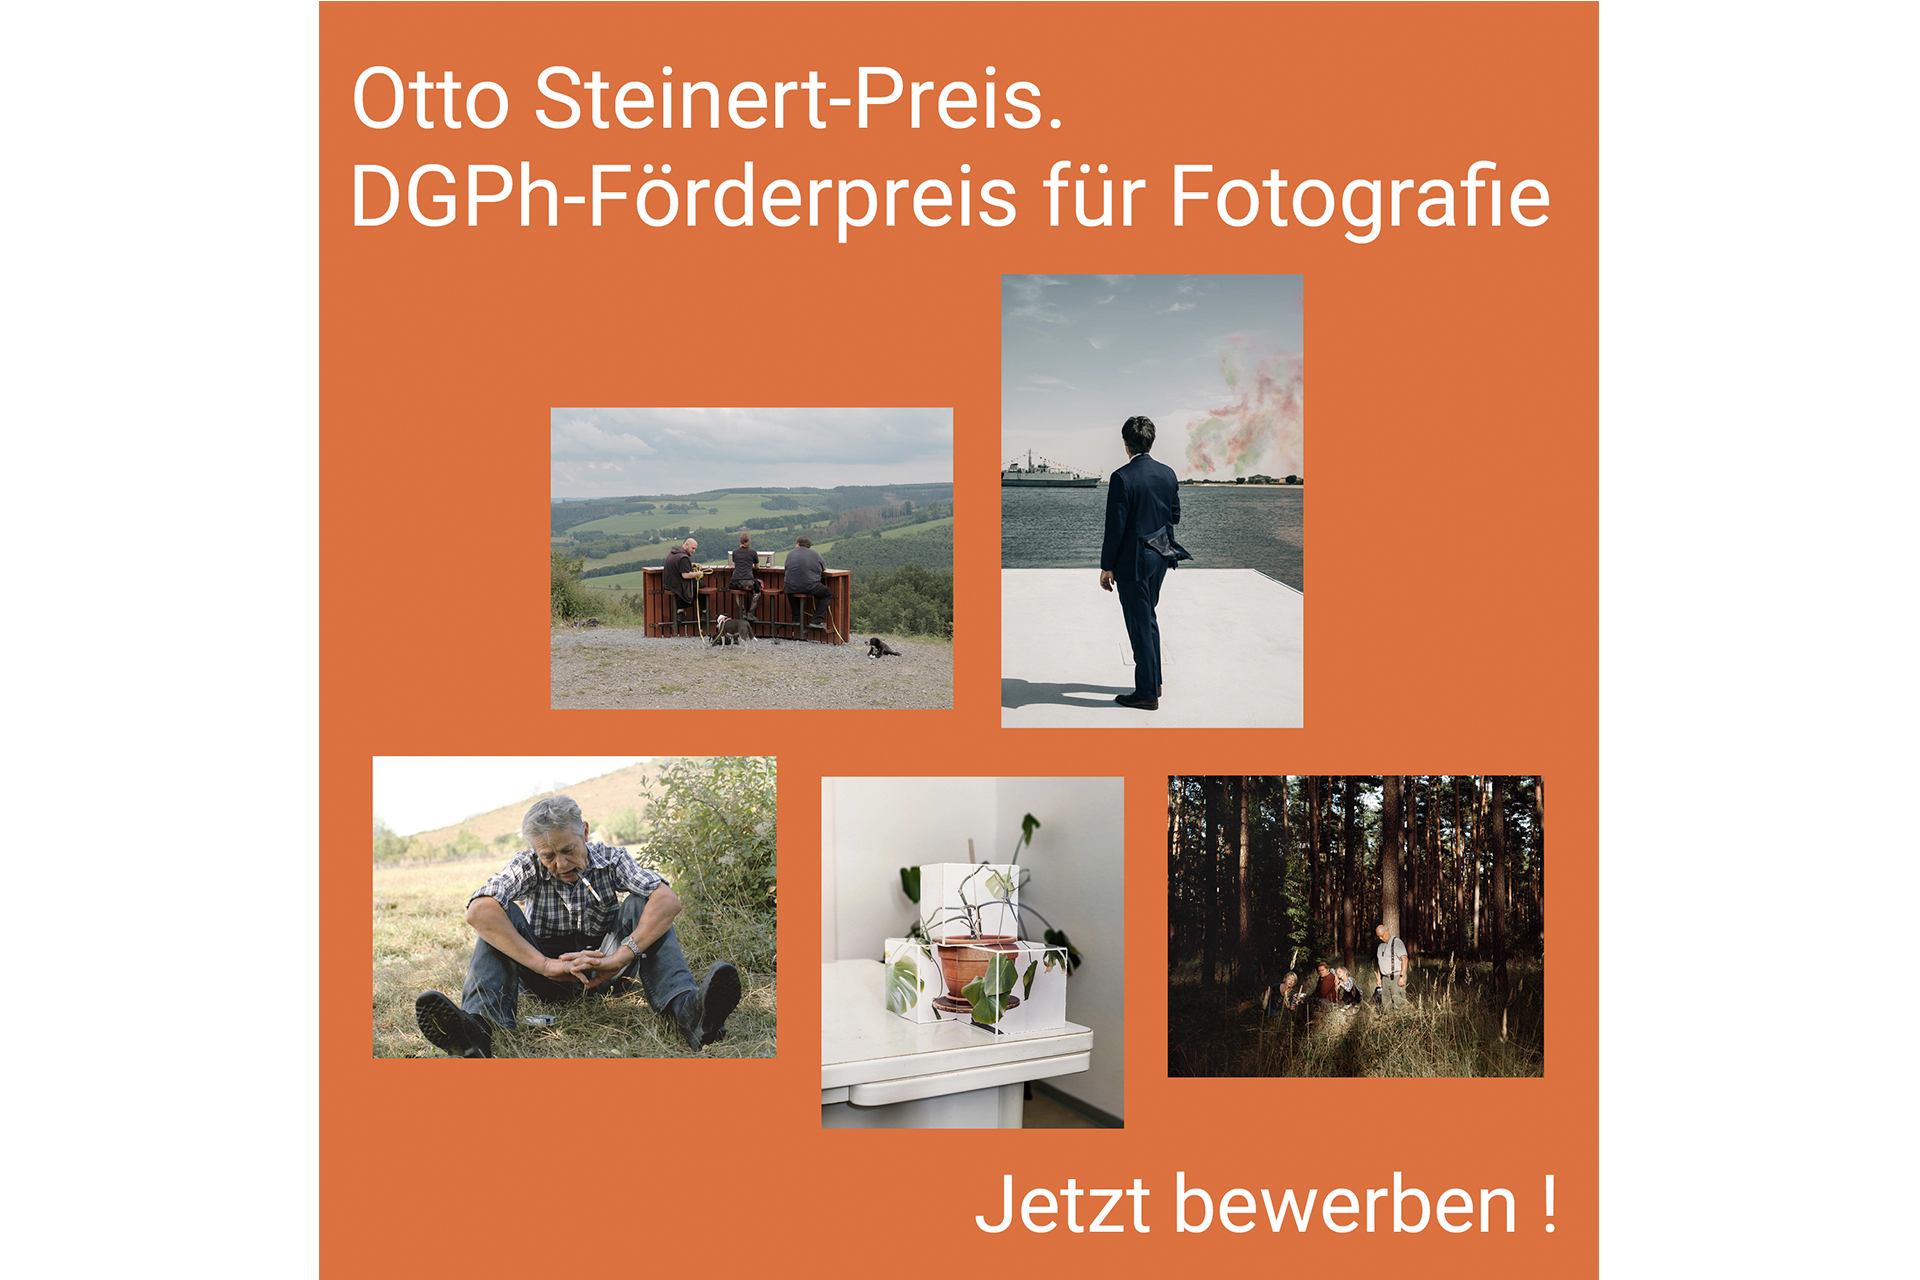 Otto-Steinert-Preis ausgeschrieben